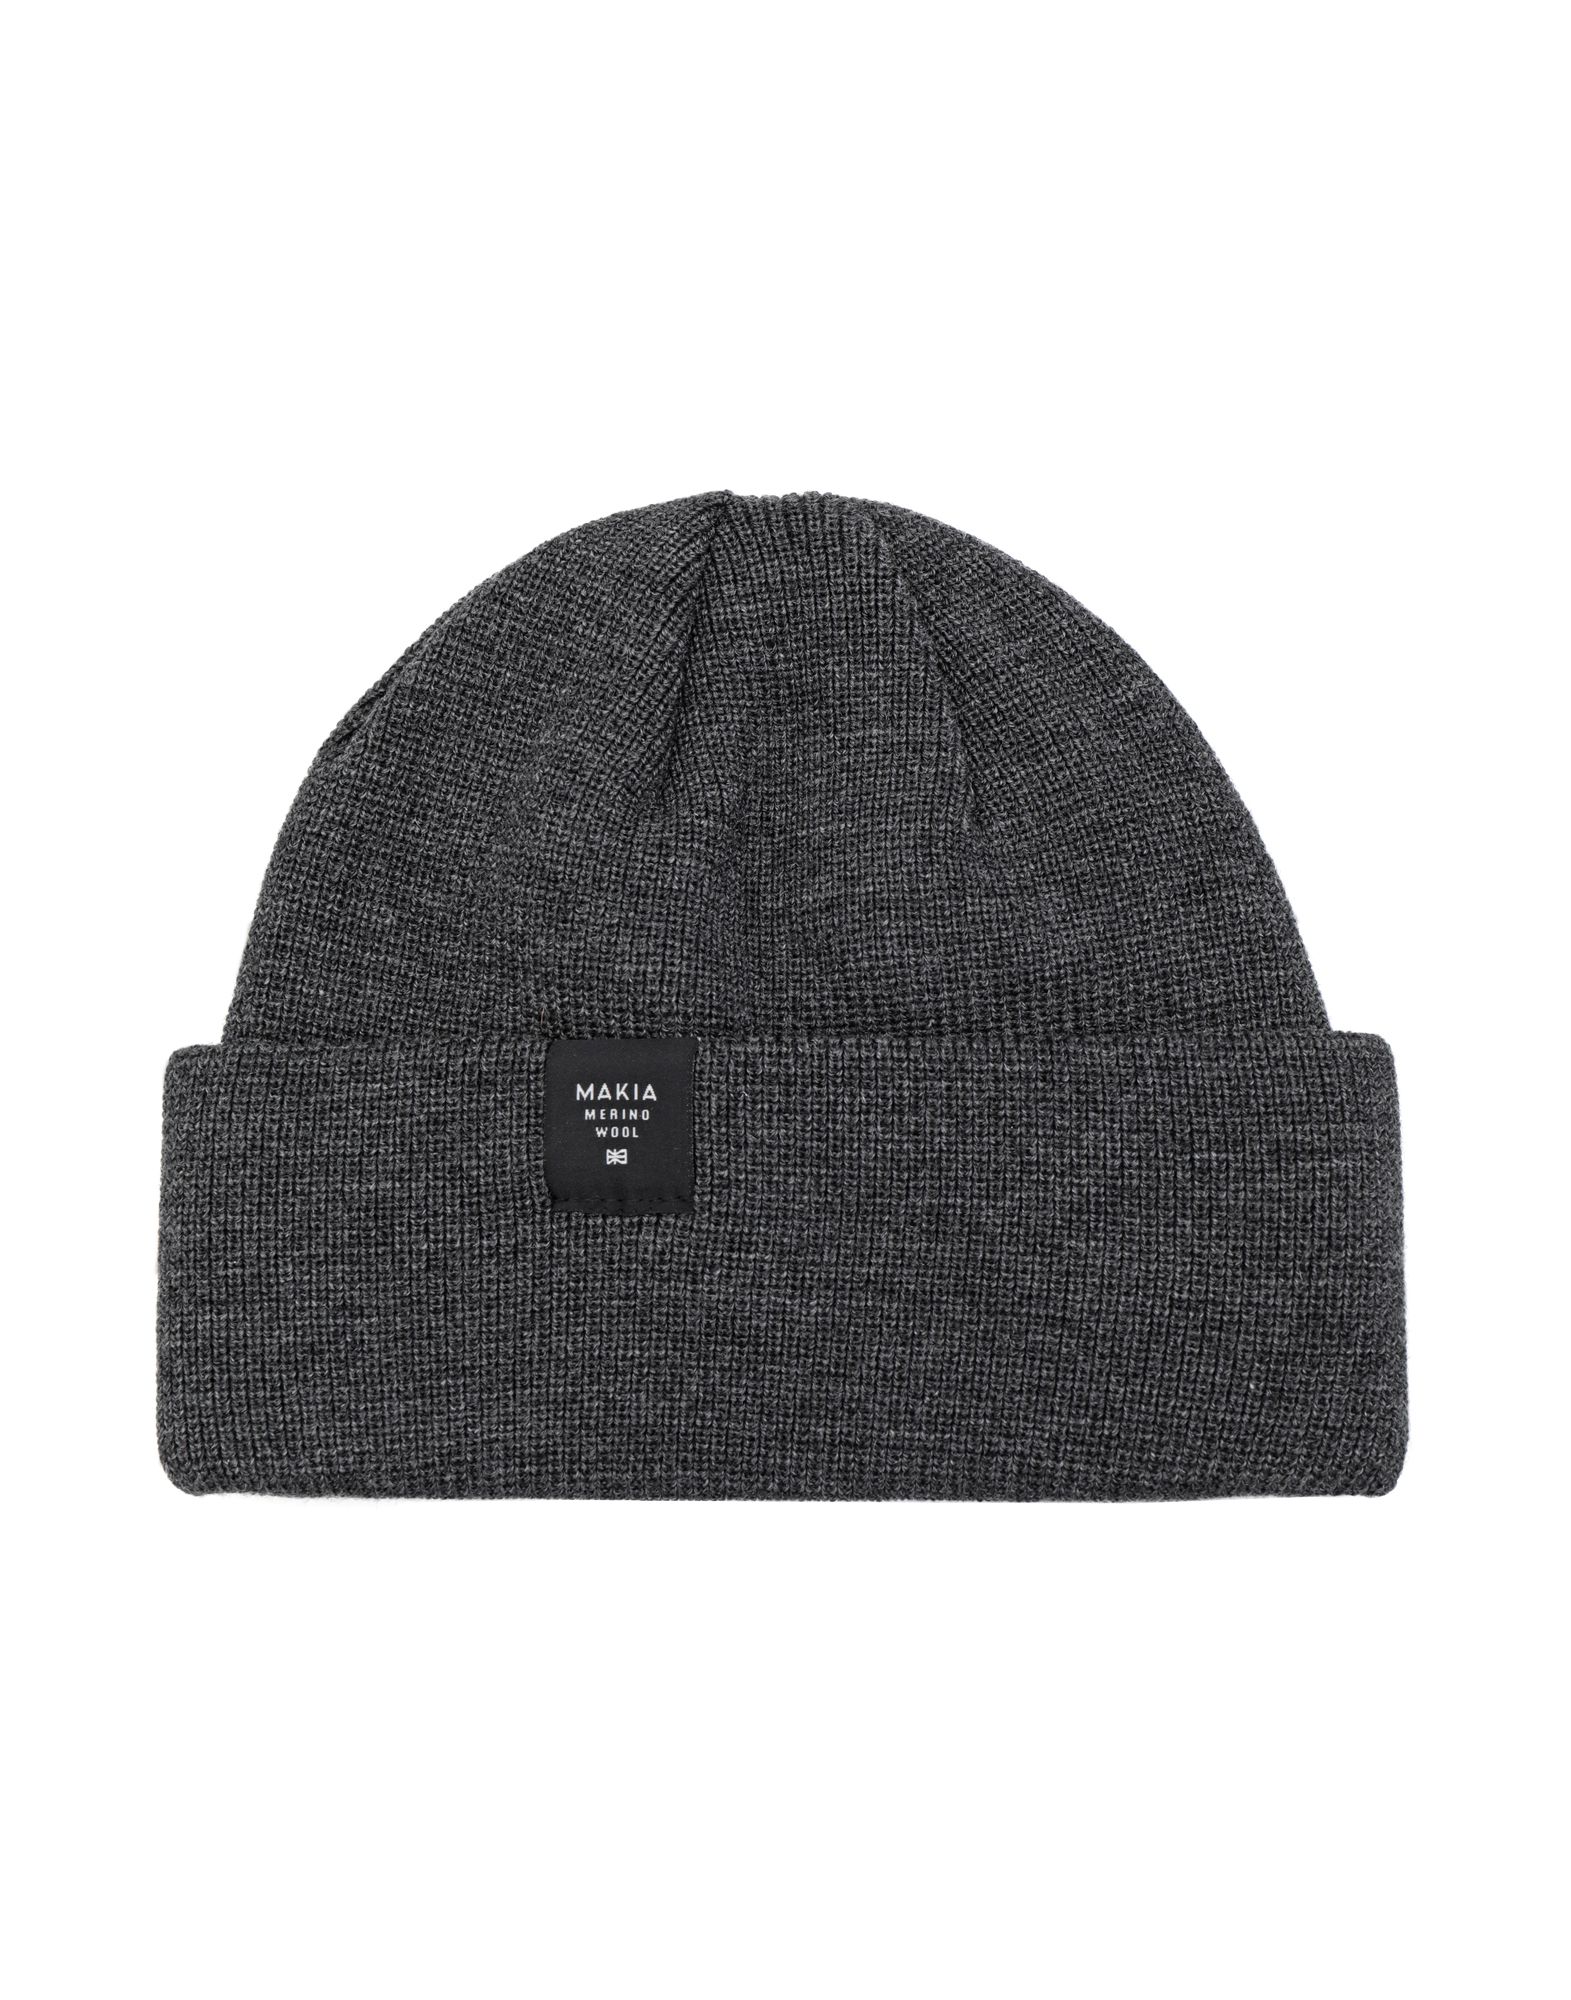 《送料無料》MAKIA Unisex 帽子 グレー one size ウール 100% merin thin cap